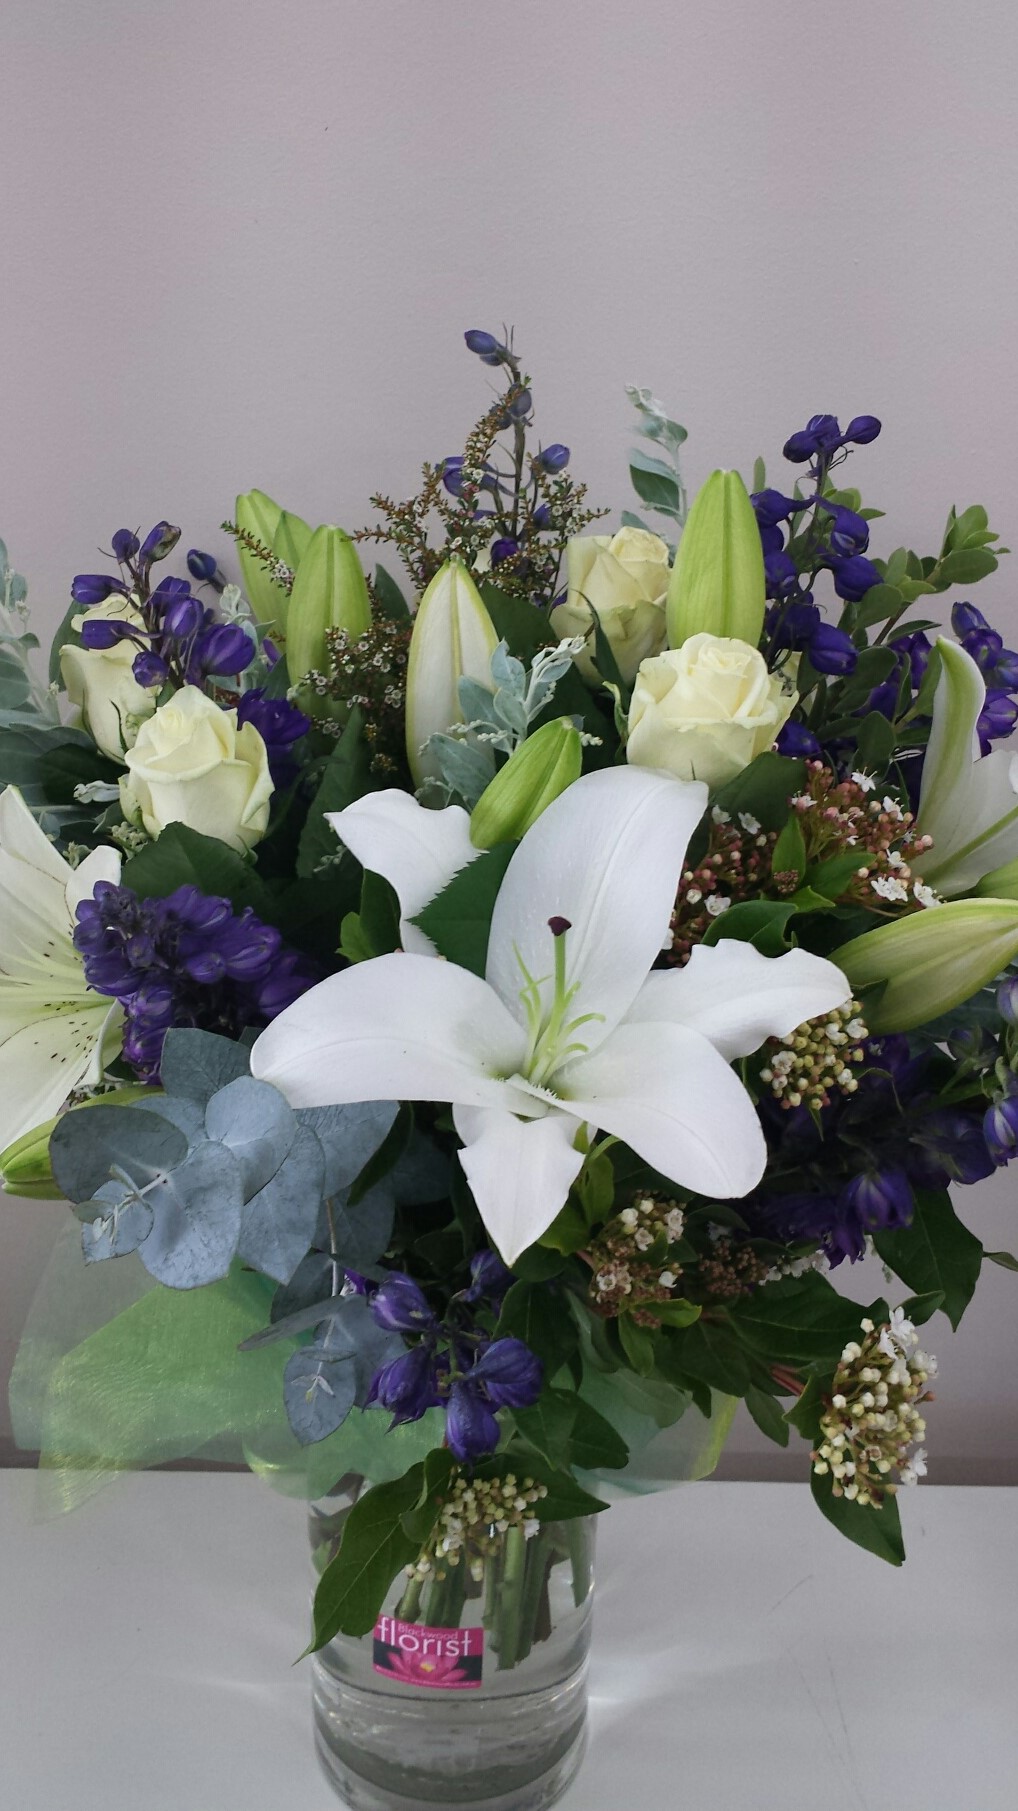 White and purple garden bouquet